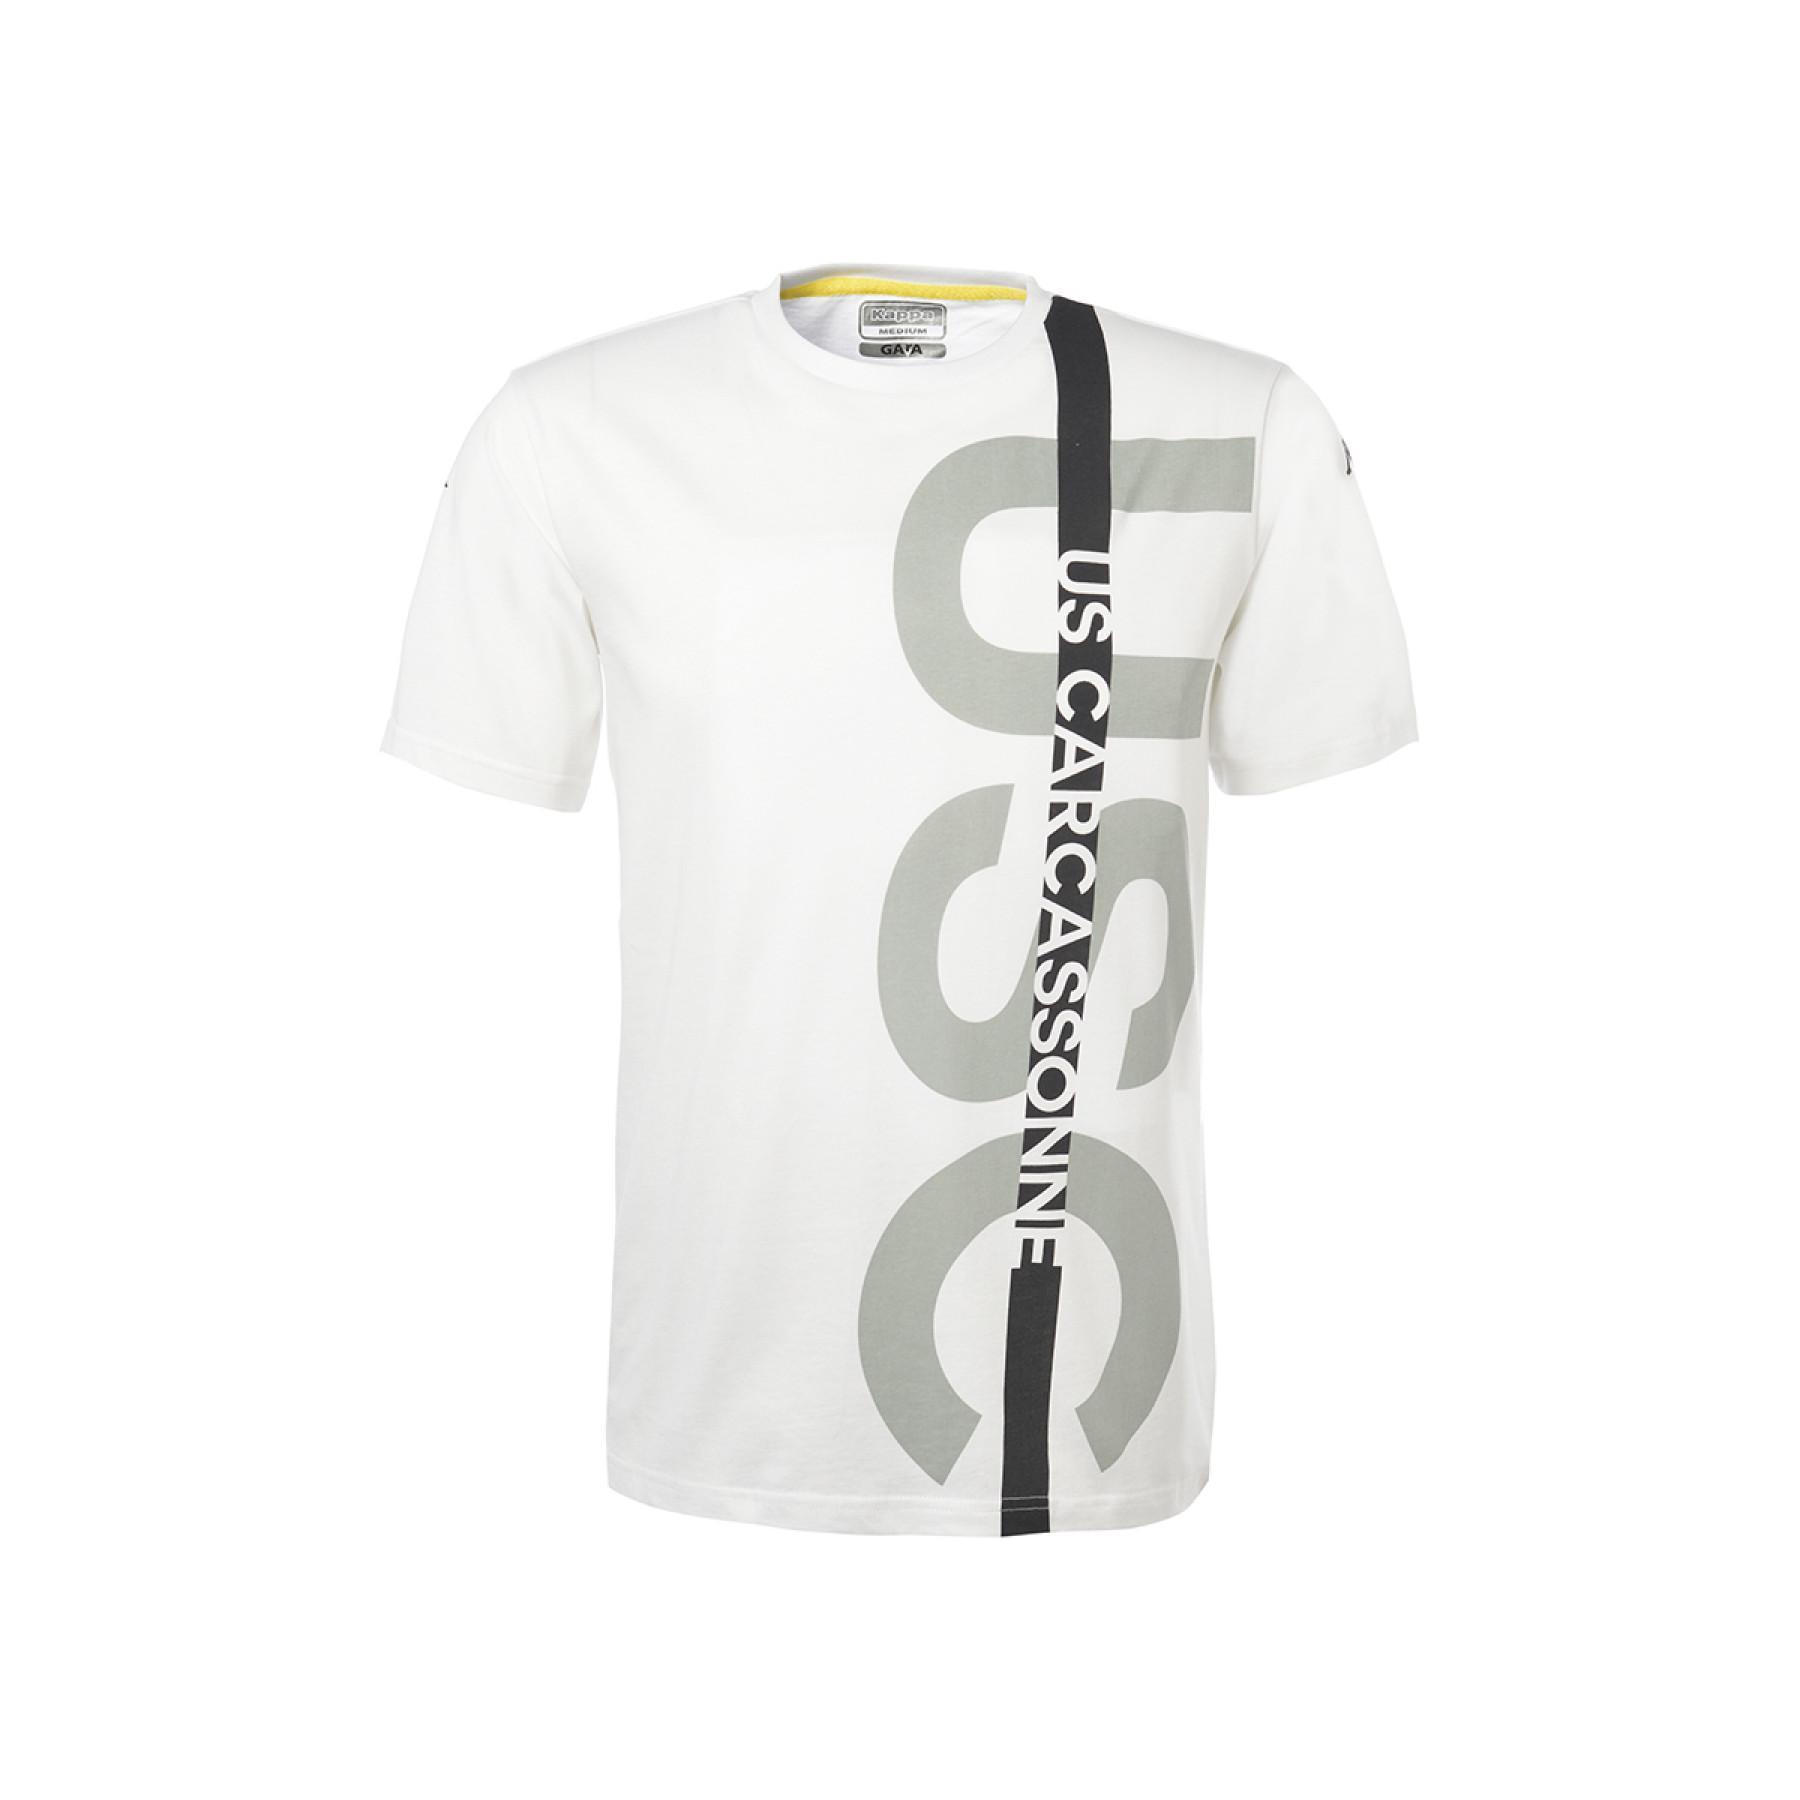 T-shirt criança Ofanto US Carcassonne